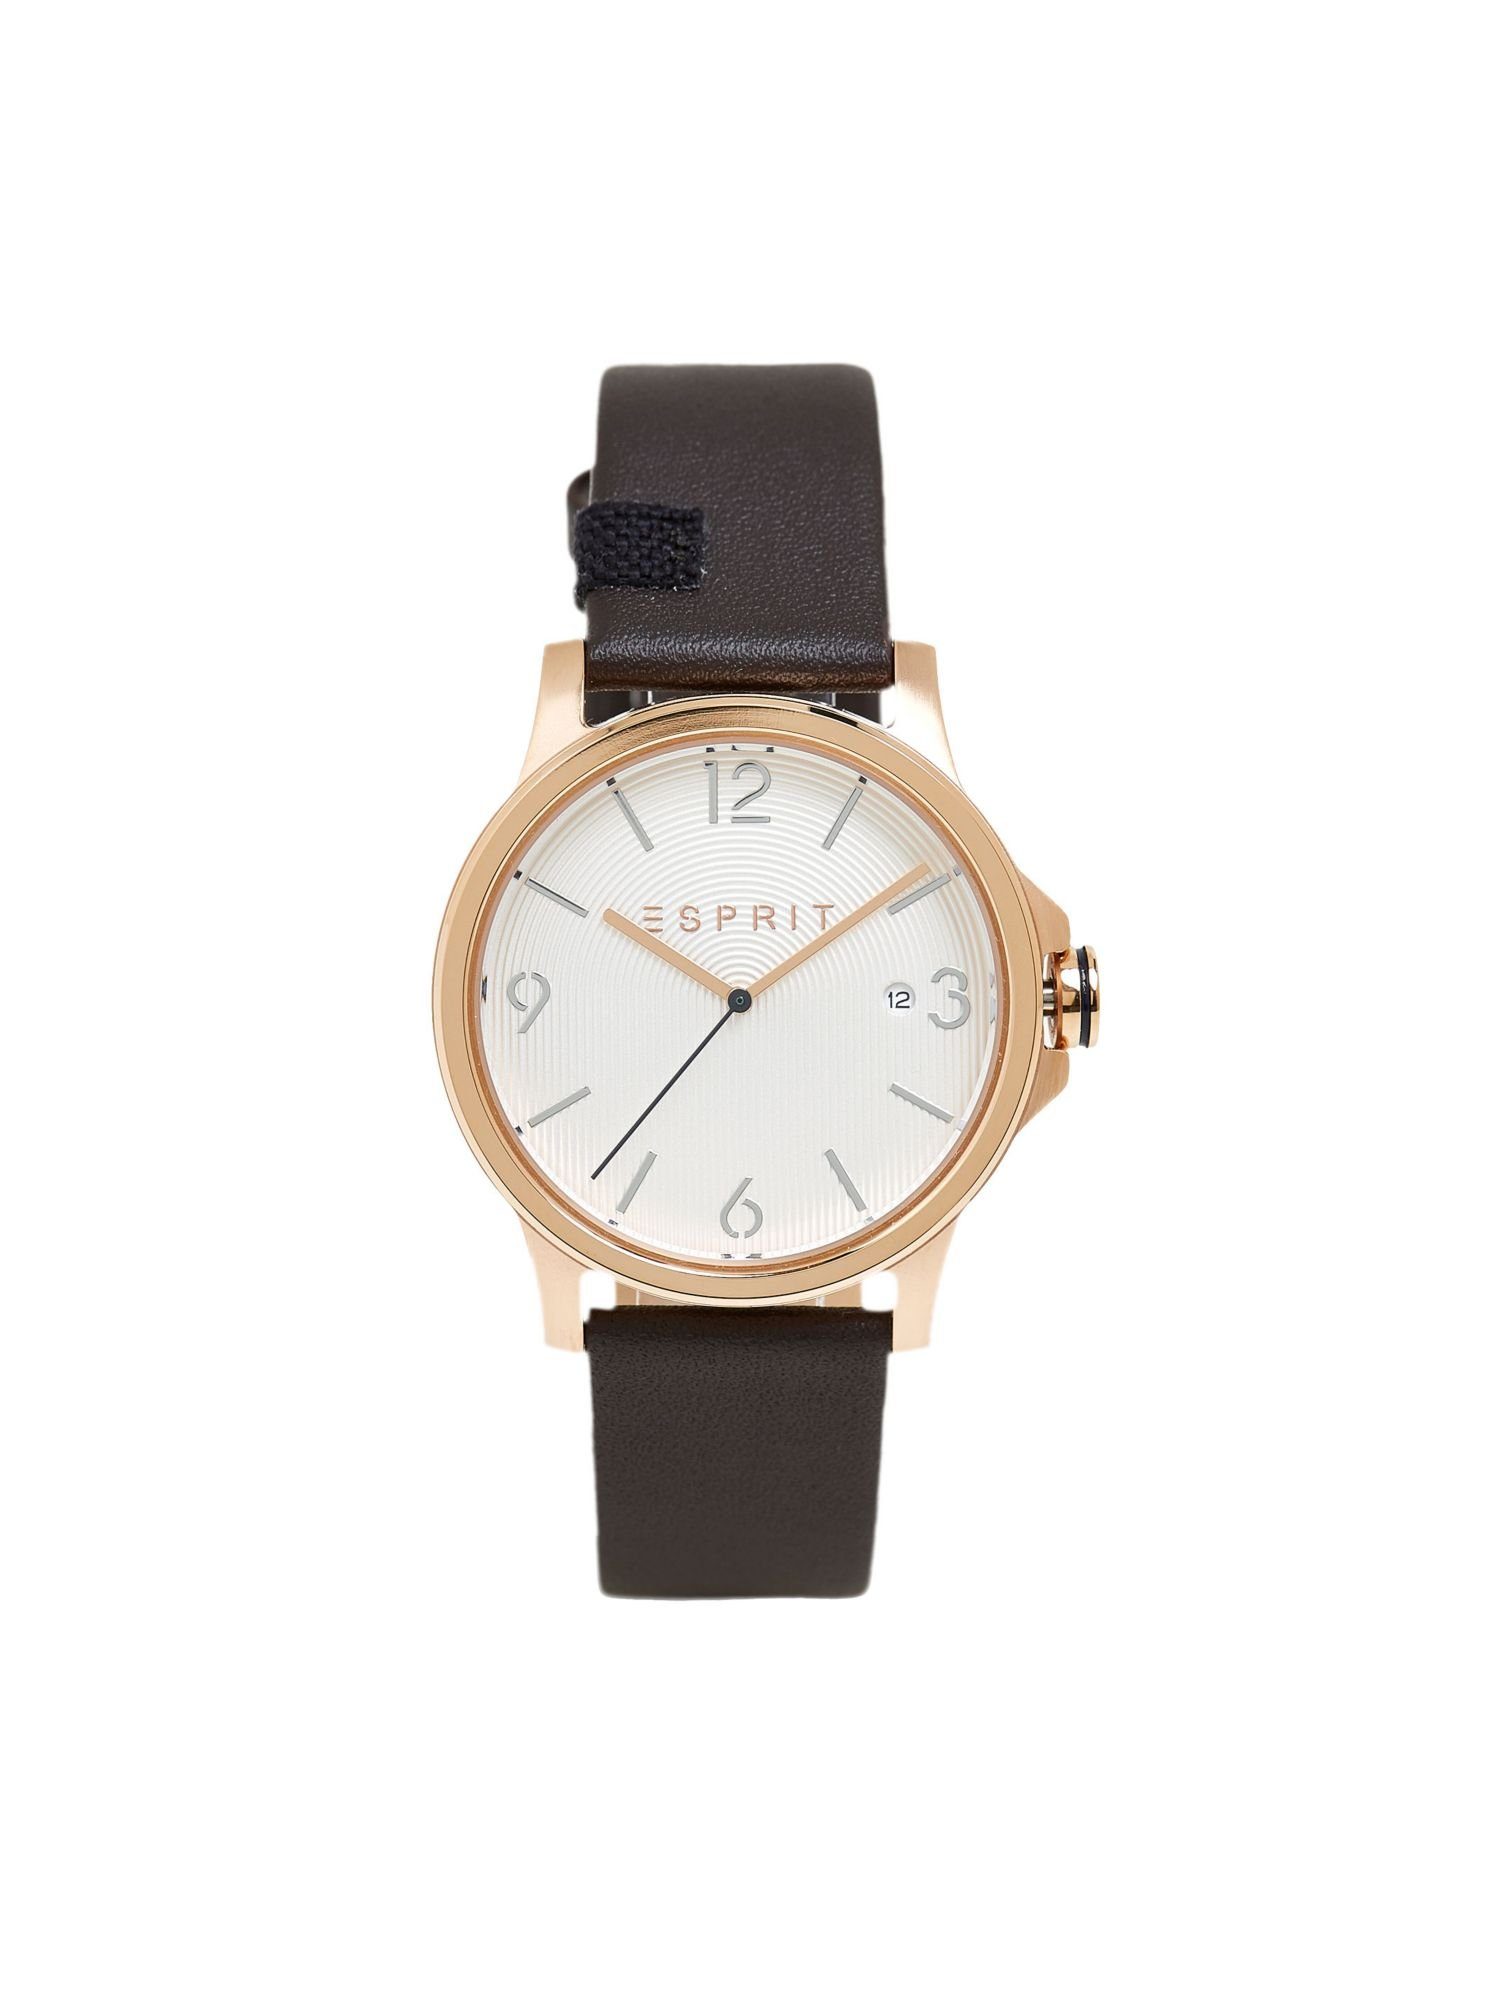 Leder-Armband Edelstahl-Uhr Quarzuhr Esprit mit